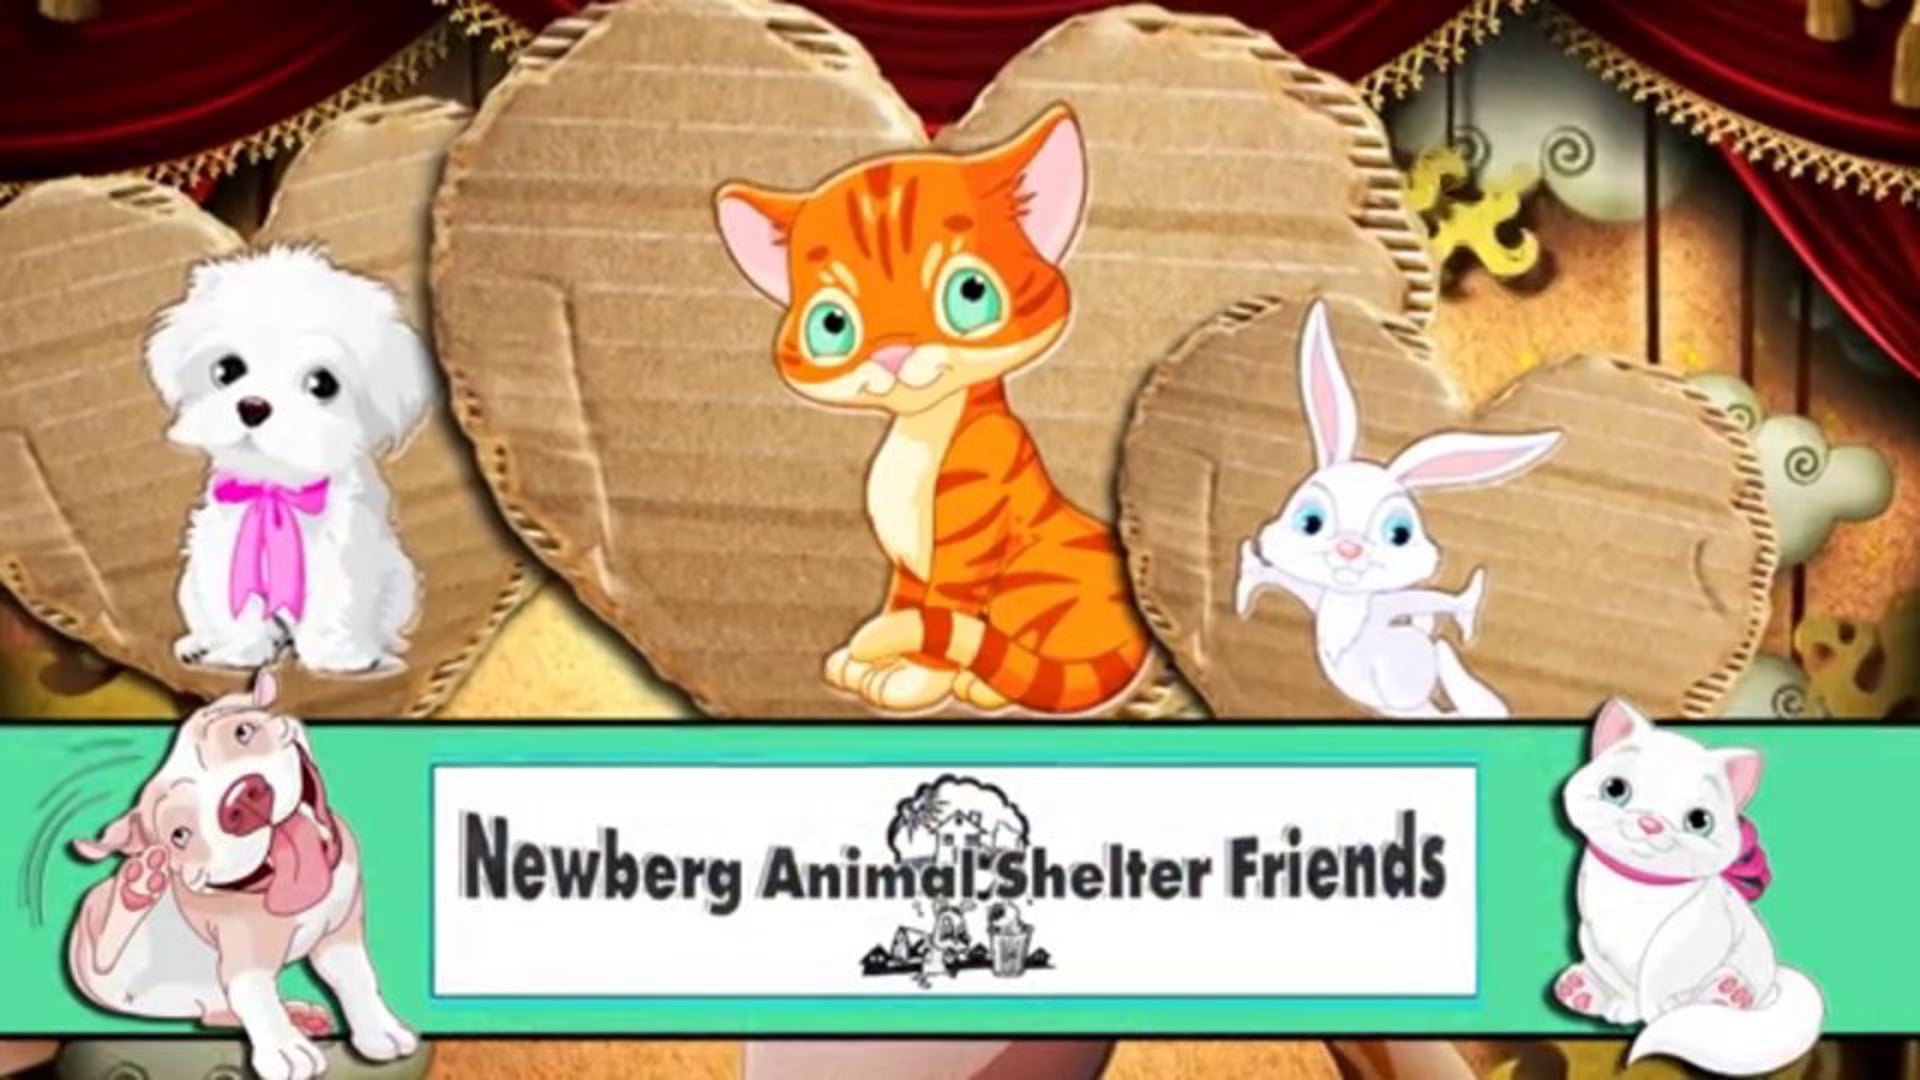 Friends of Newberg Animal Shelter